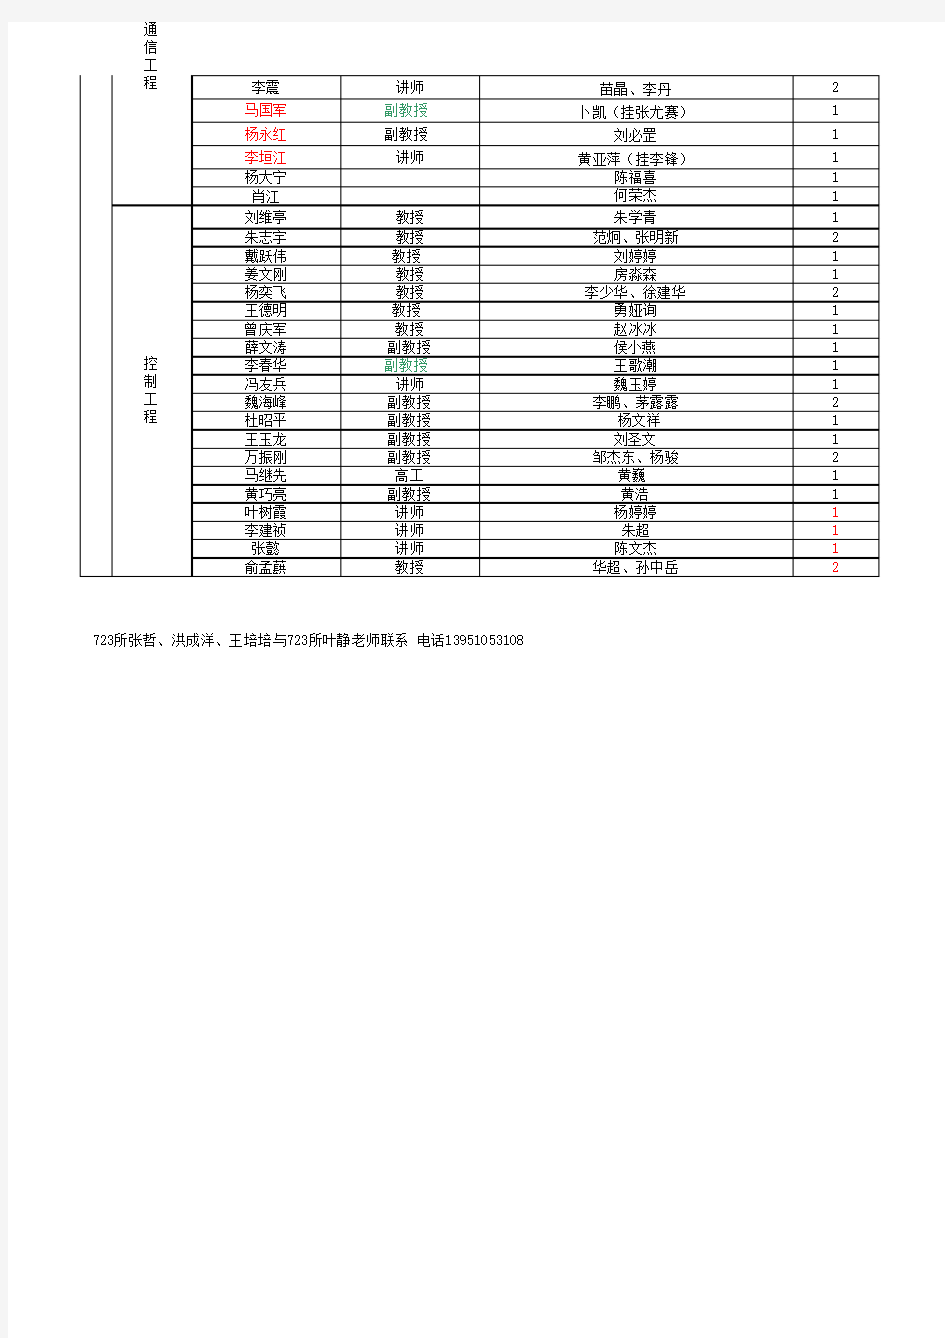 江苏科技大学2013级研究生导师名单汇总